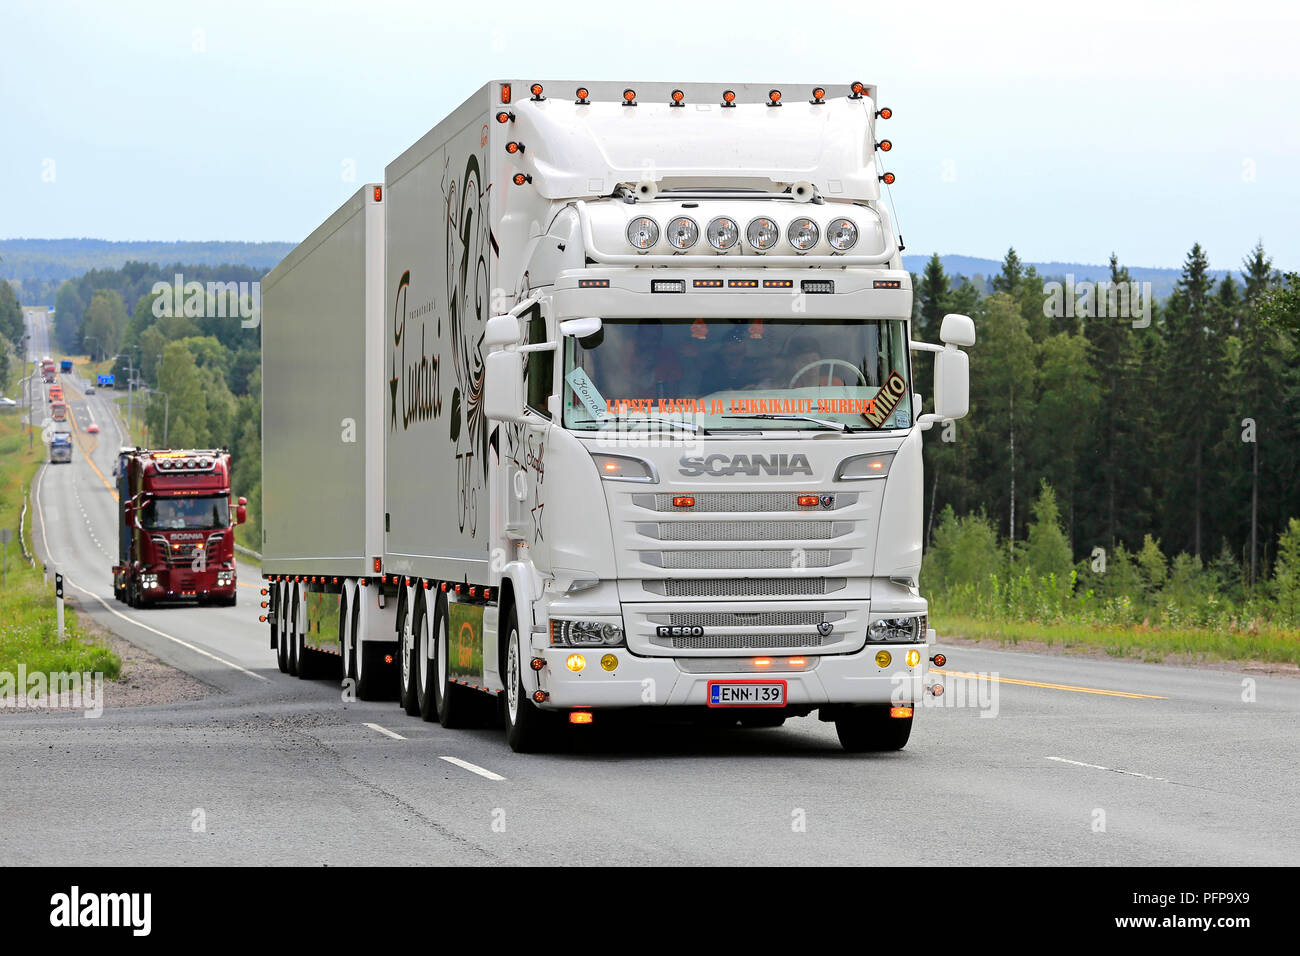 https://c8.alamy.com/compes/pfp9x9/ikaalinen-finlandia-agosto-9-2018-blanco-r-fletes-de-camiones-scania-starfly-personalizados-con-accesorios-ligeros-en-camiones-del-convoy-para-poder-mostrar-la-carretilla-2018-pfp9x9.jpg